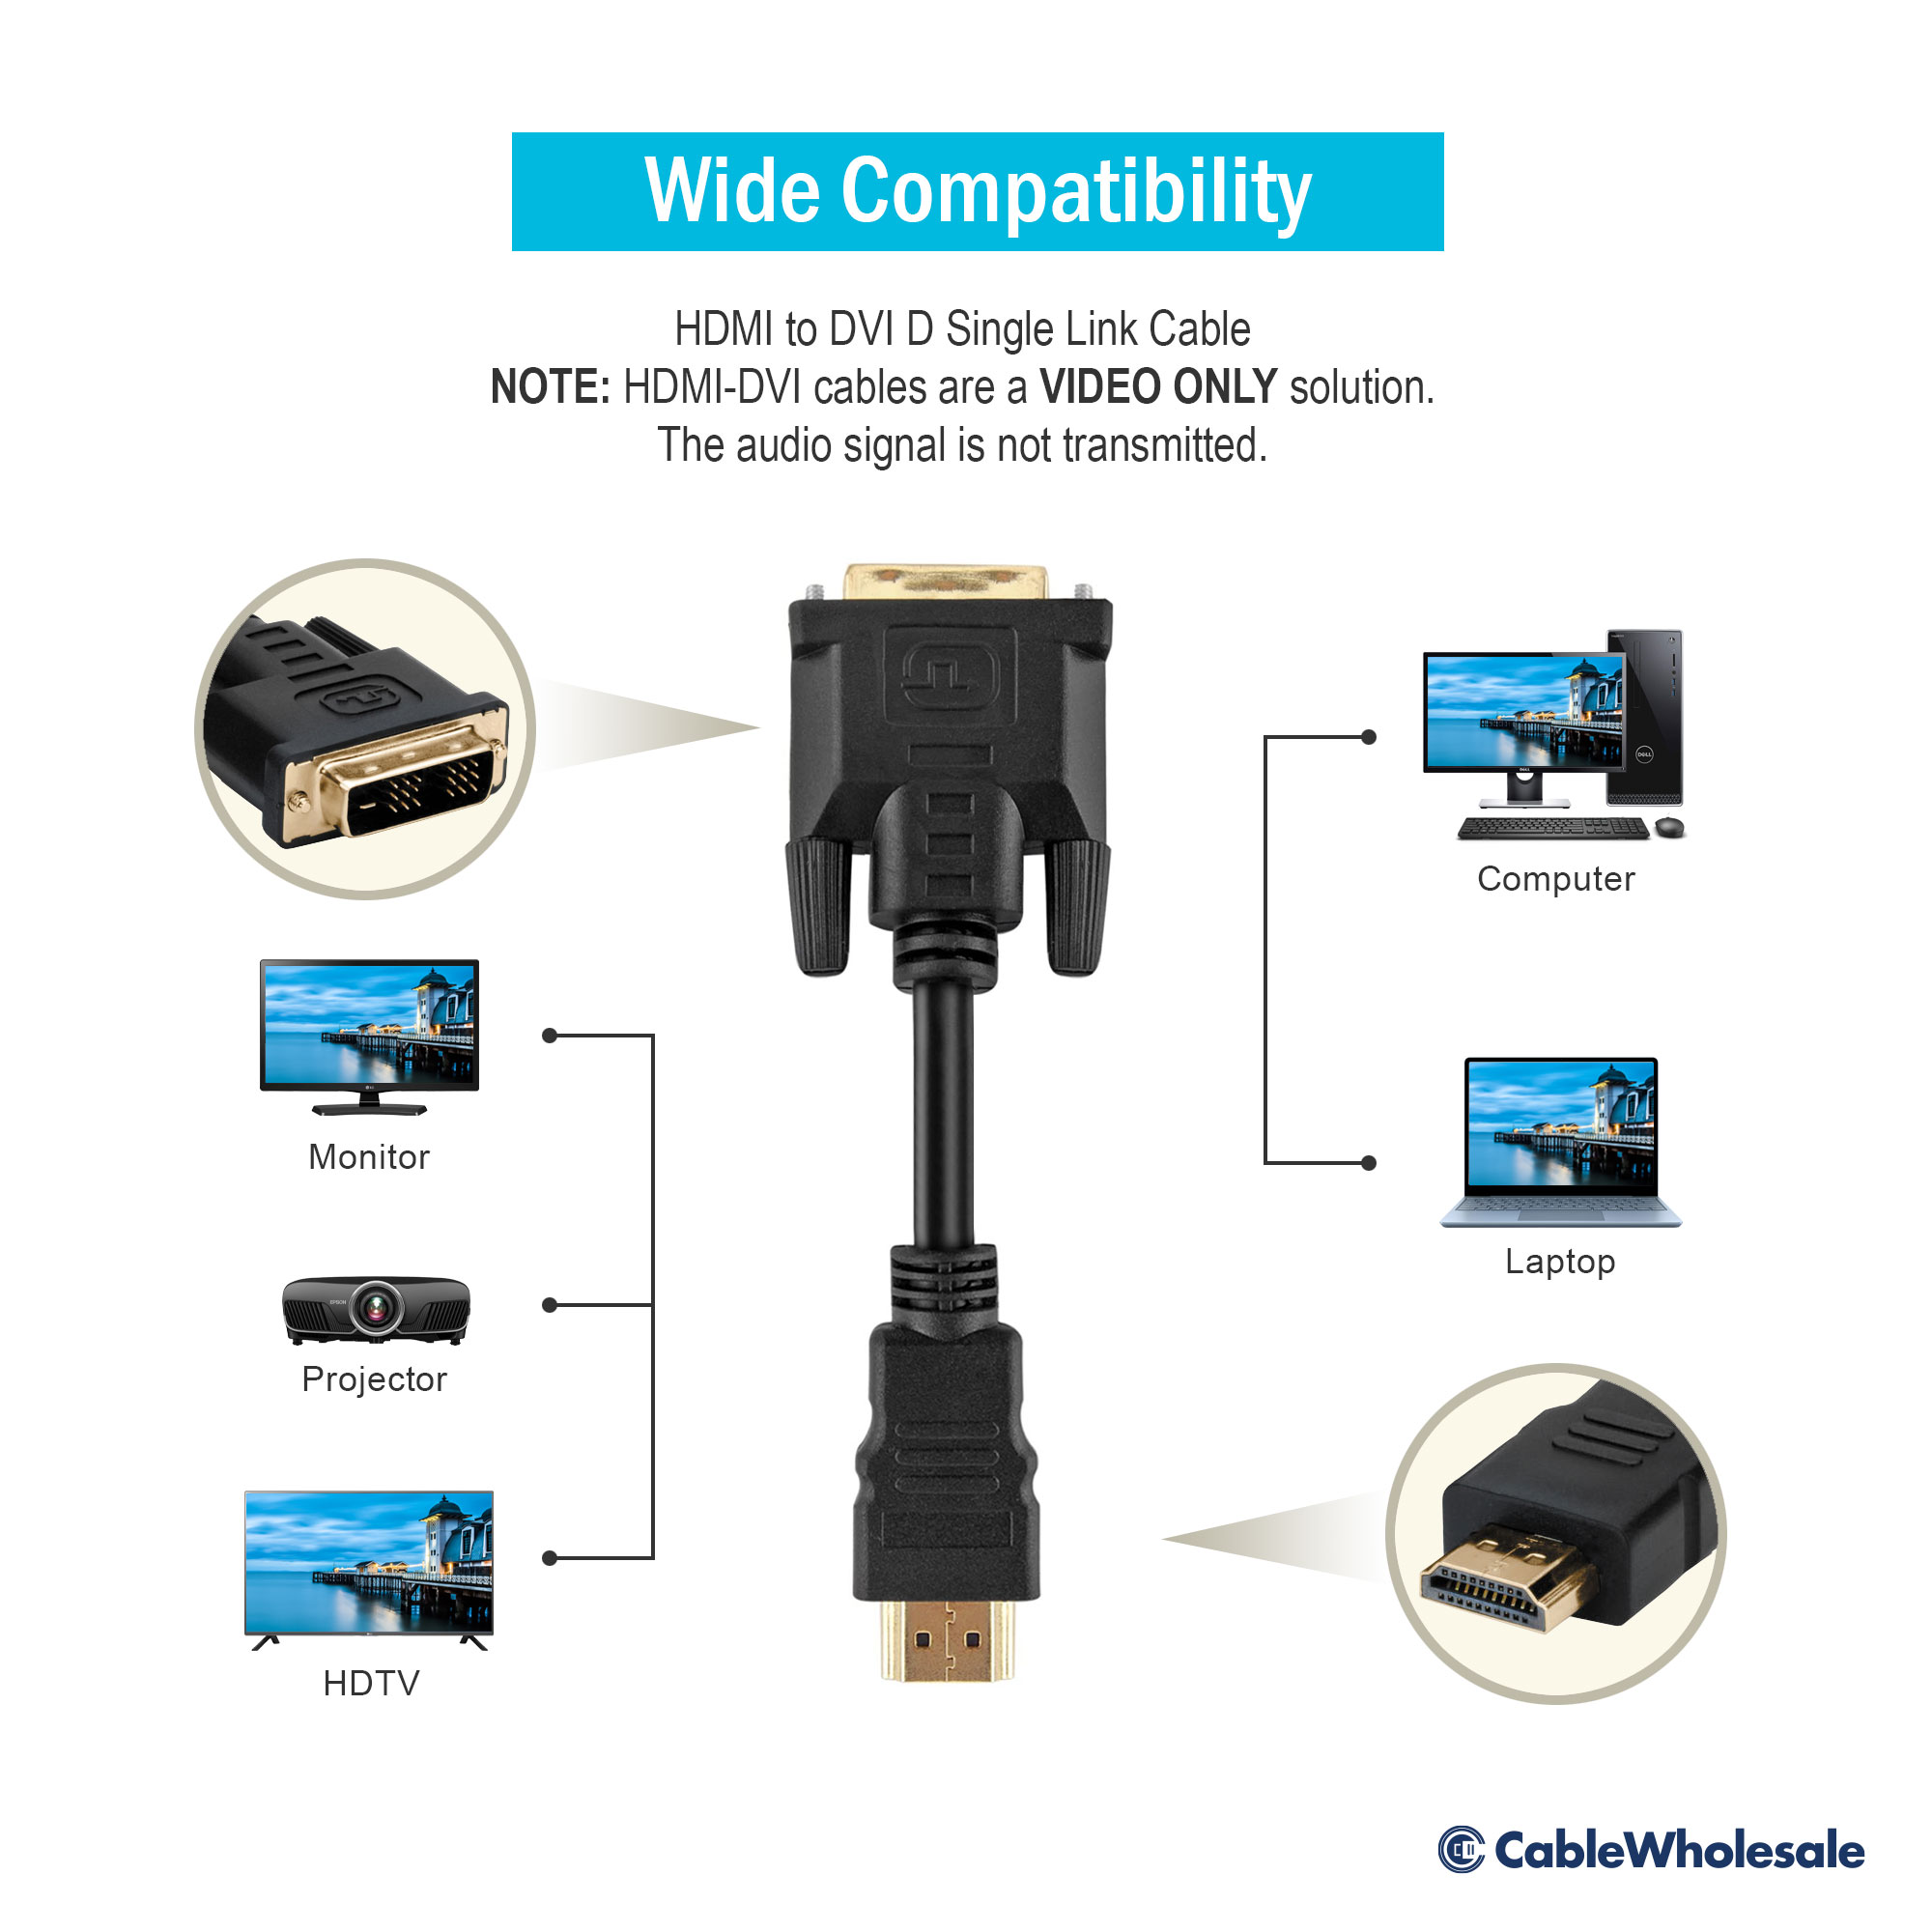 fjendtlighed skulder Krydret 3ft HDMI to DVI D Single Link Cable, 1080p